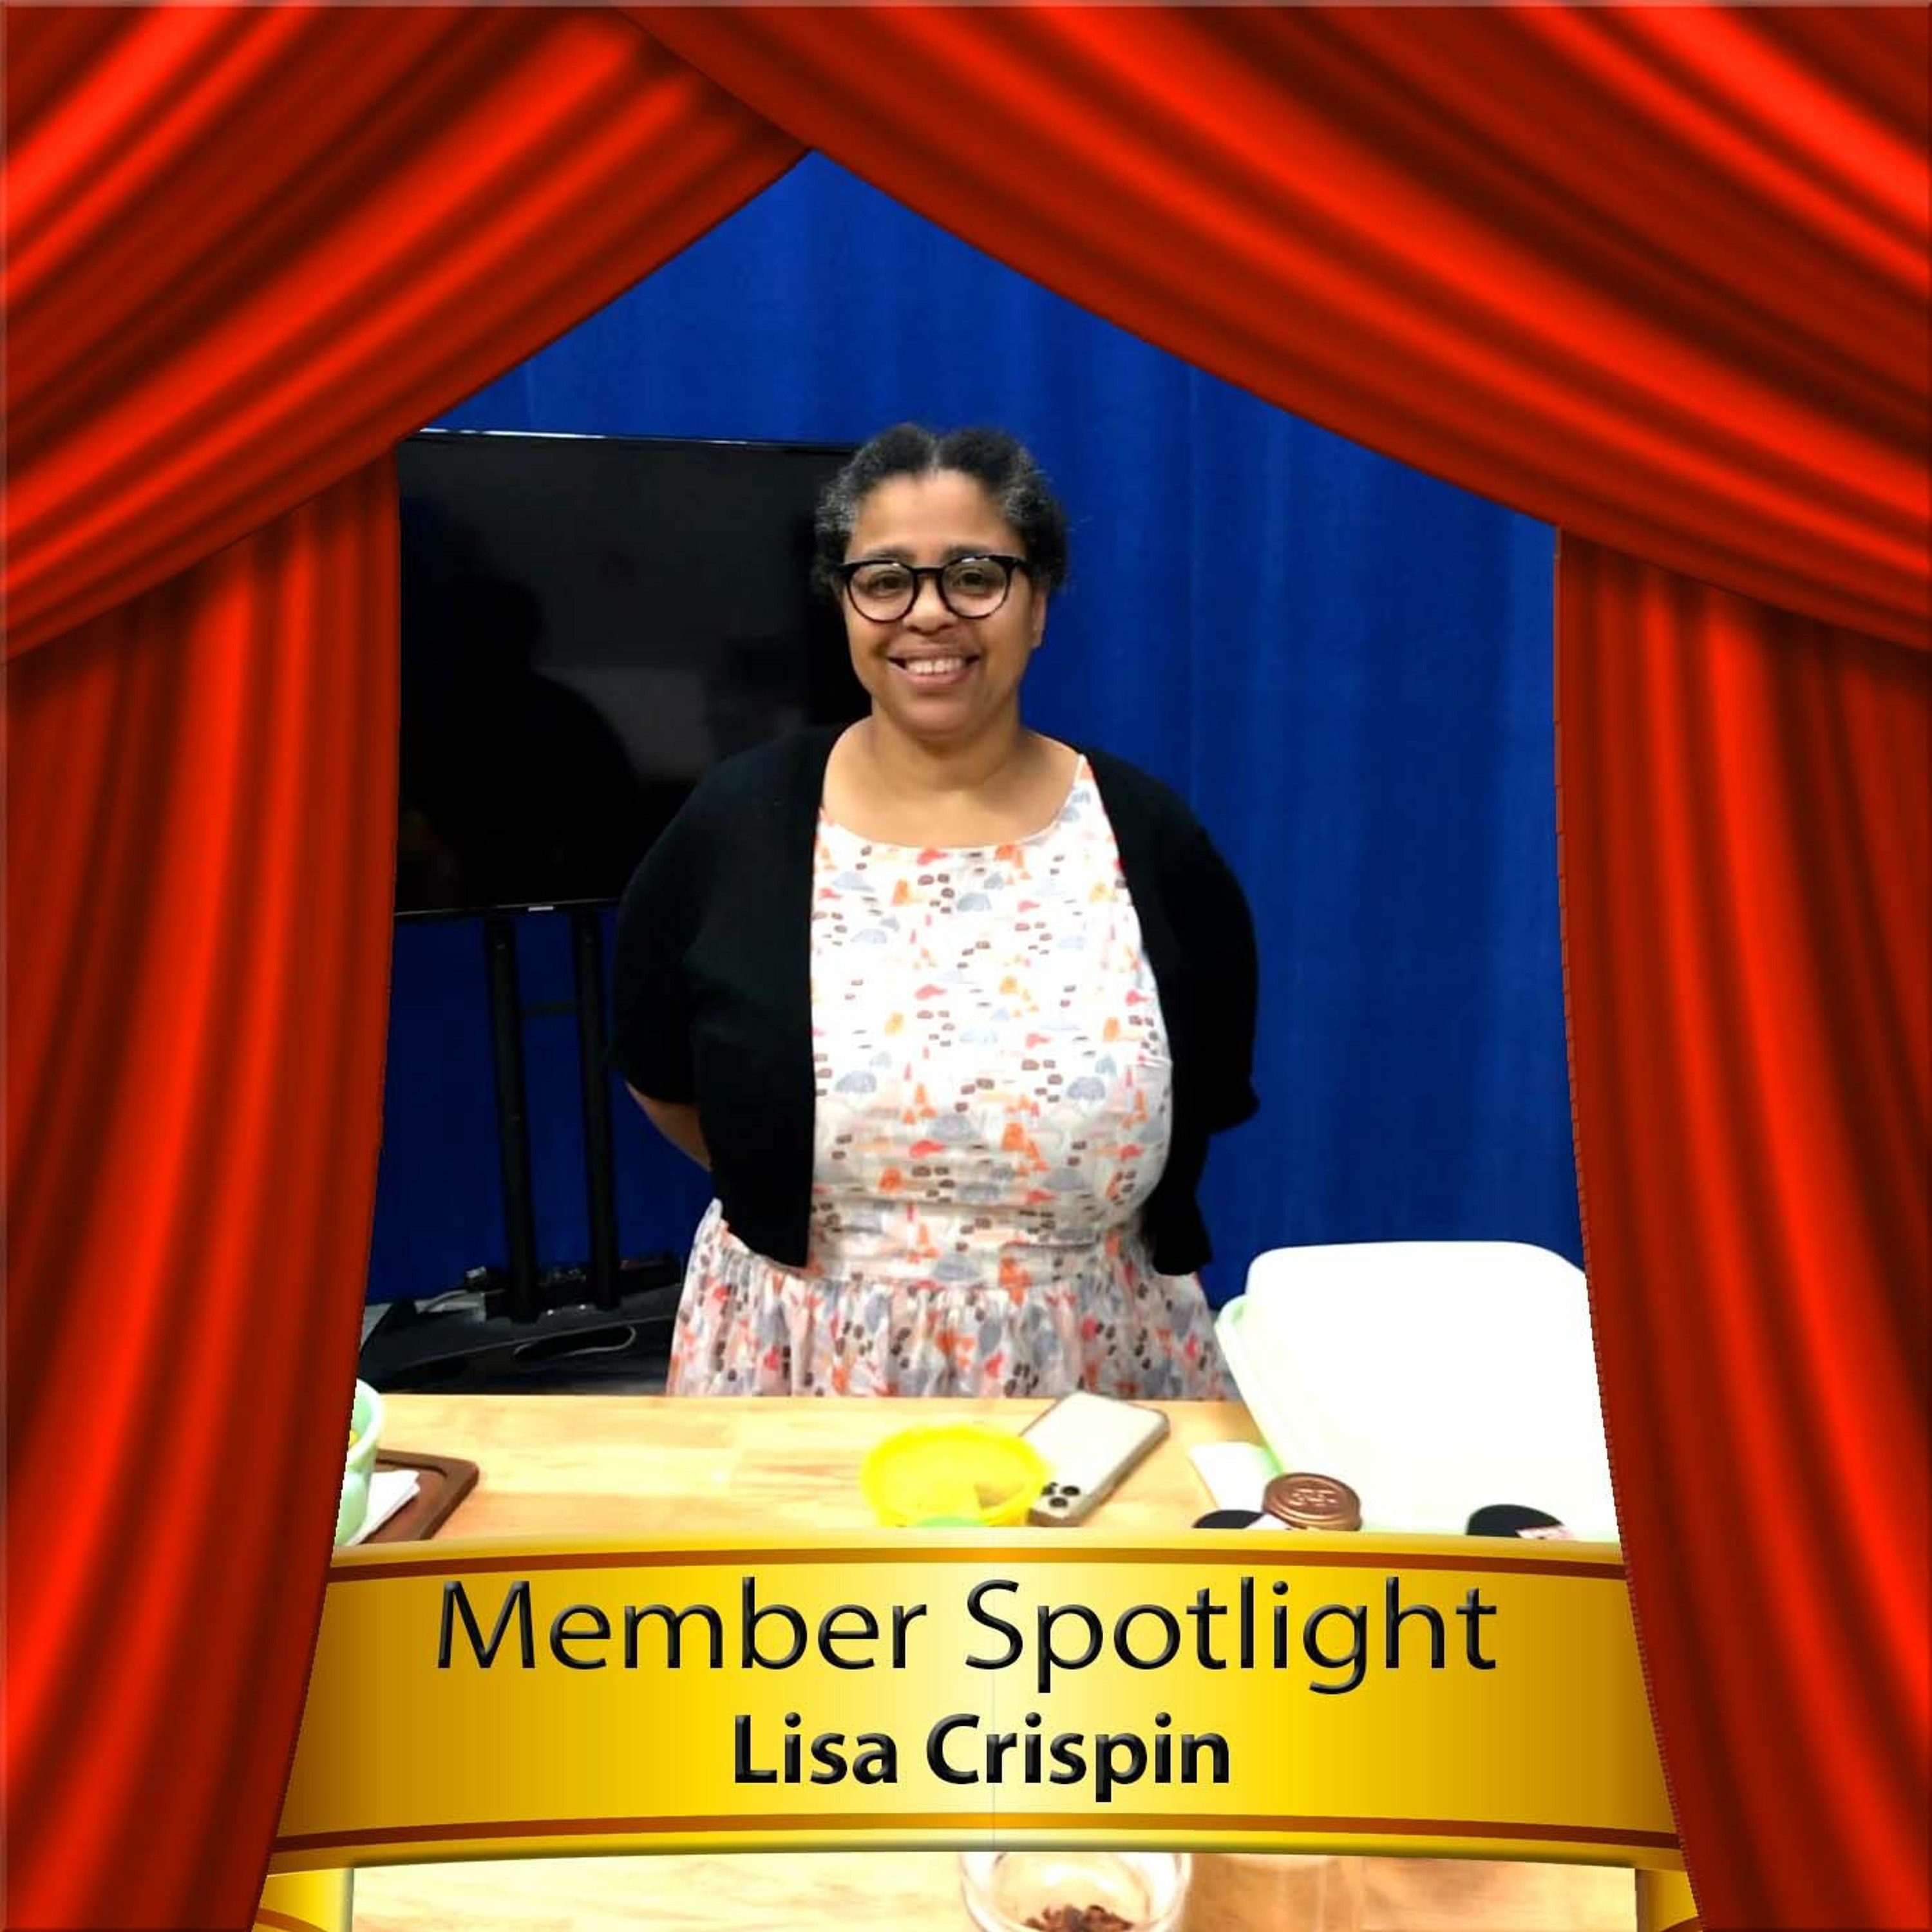 Member Spotlight: Lisa Crispin